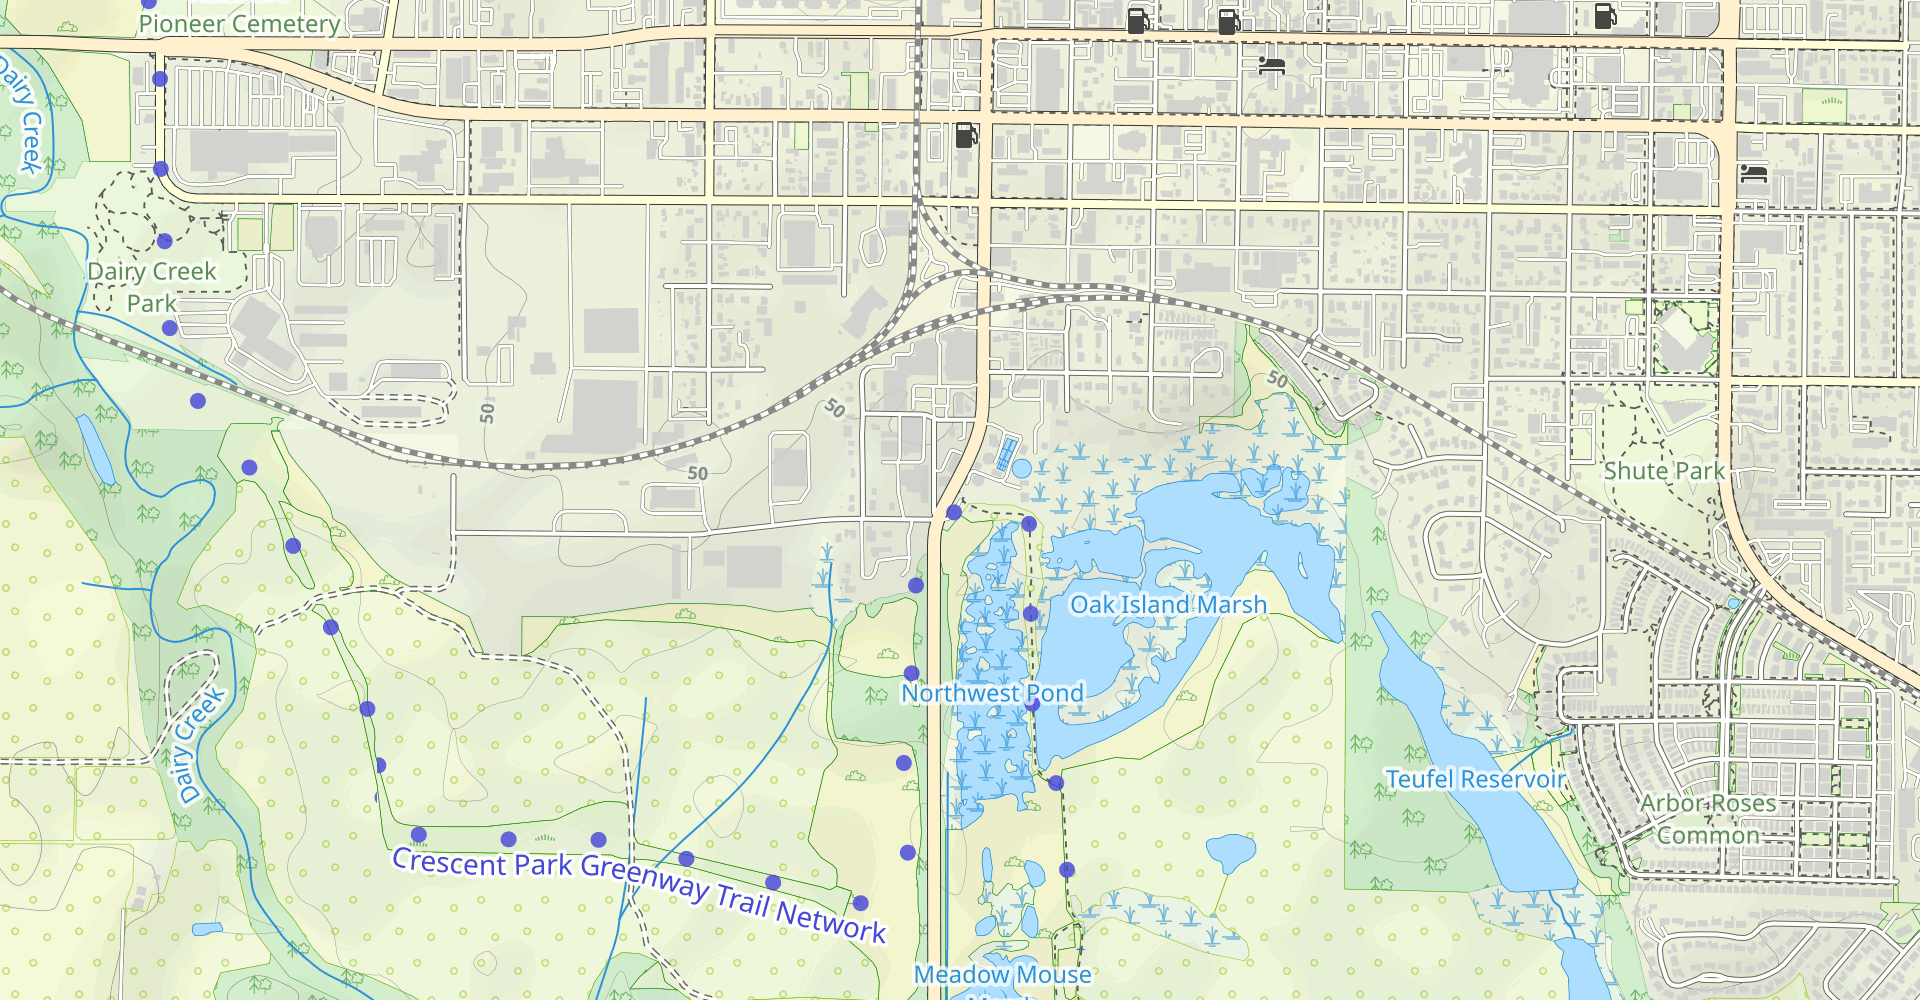 Pintail Pond via North-South Trail